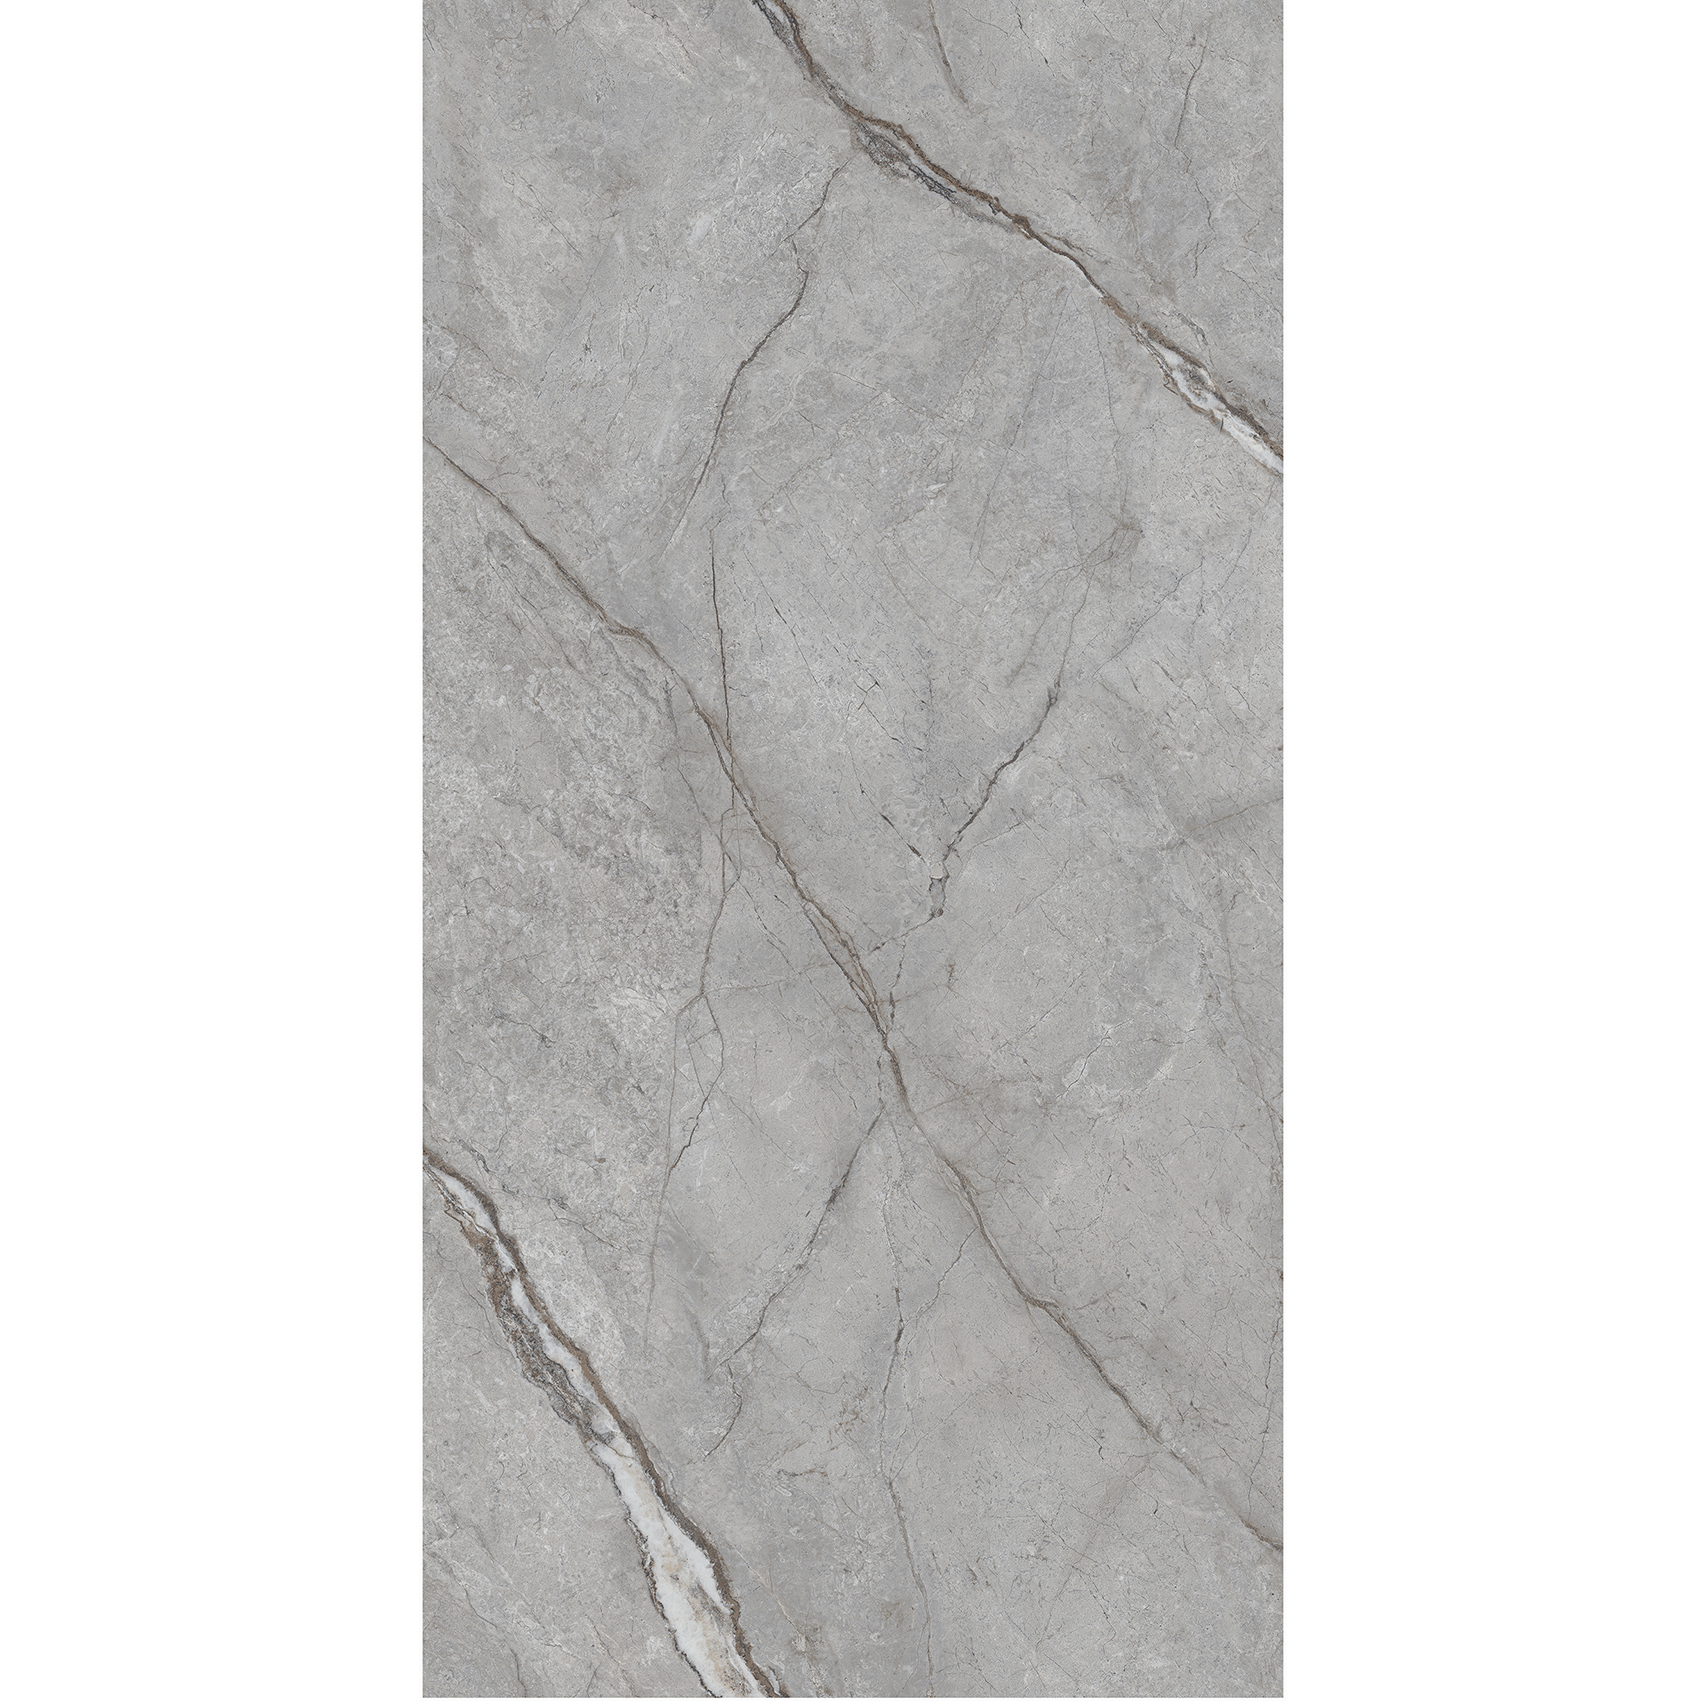 wear-resistant tile slab for benchtop manufacturersintered stone